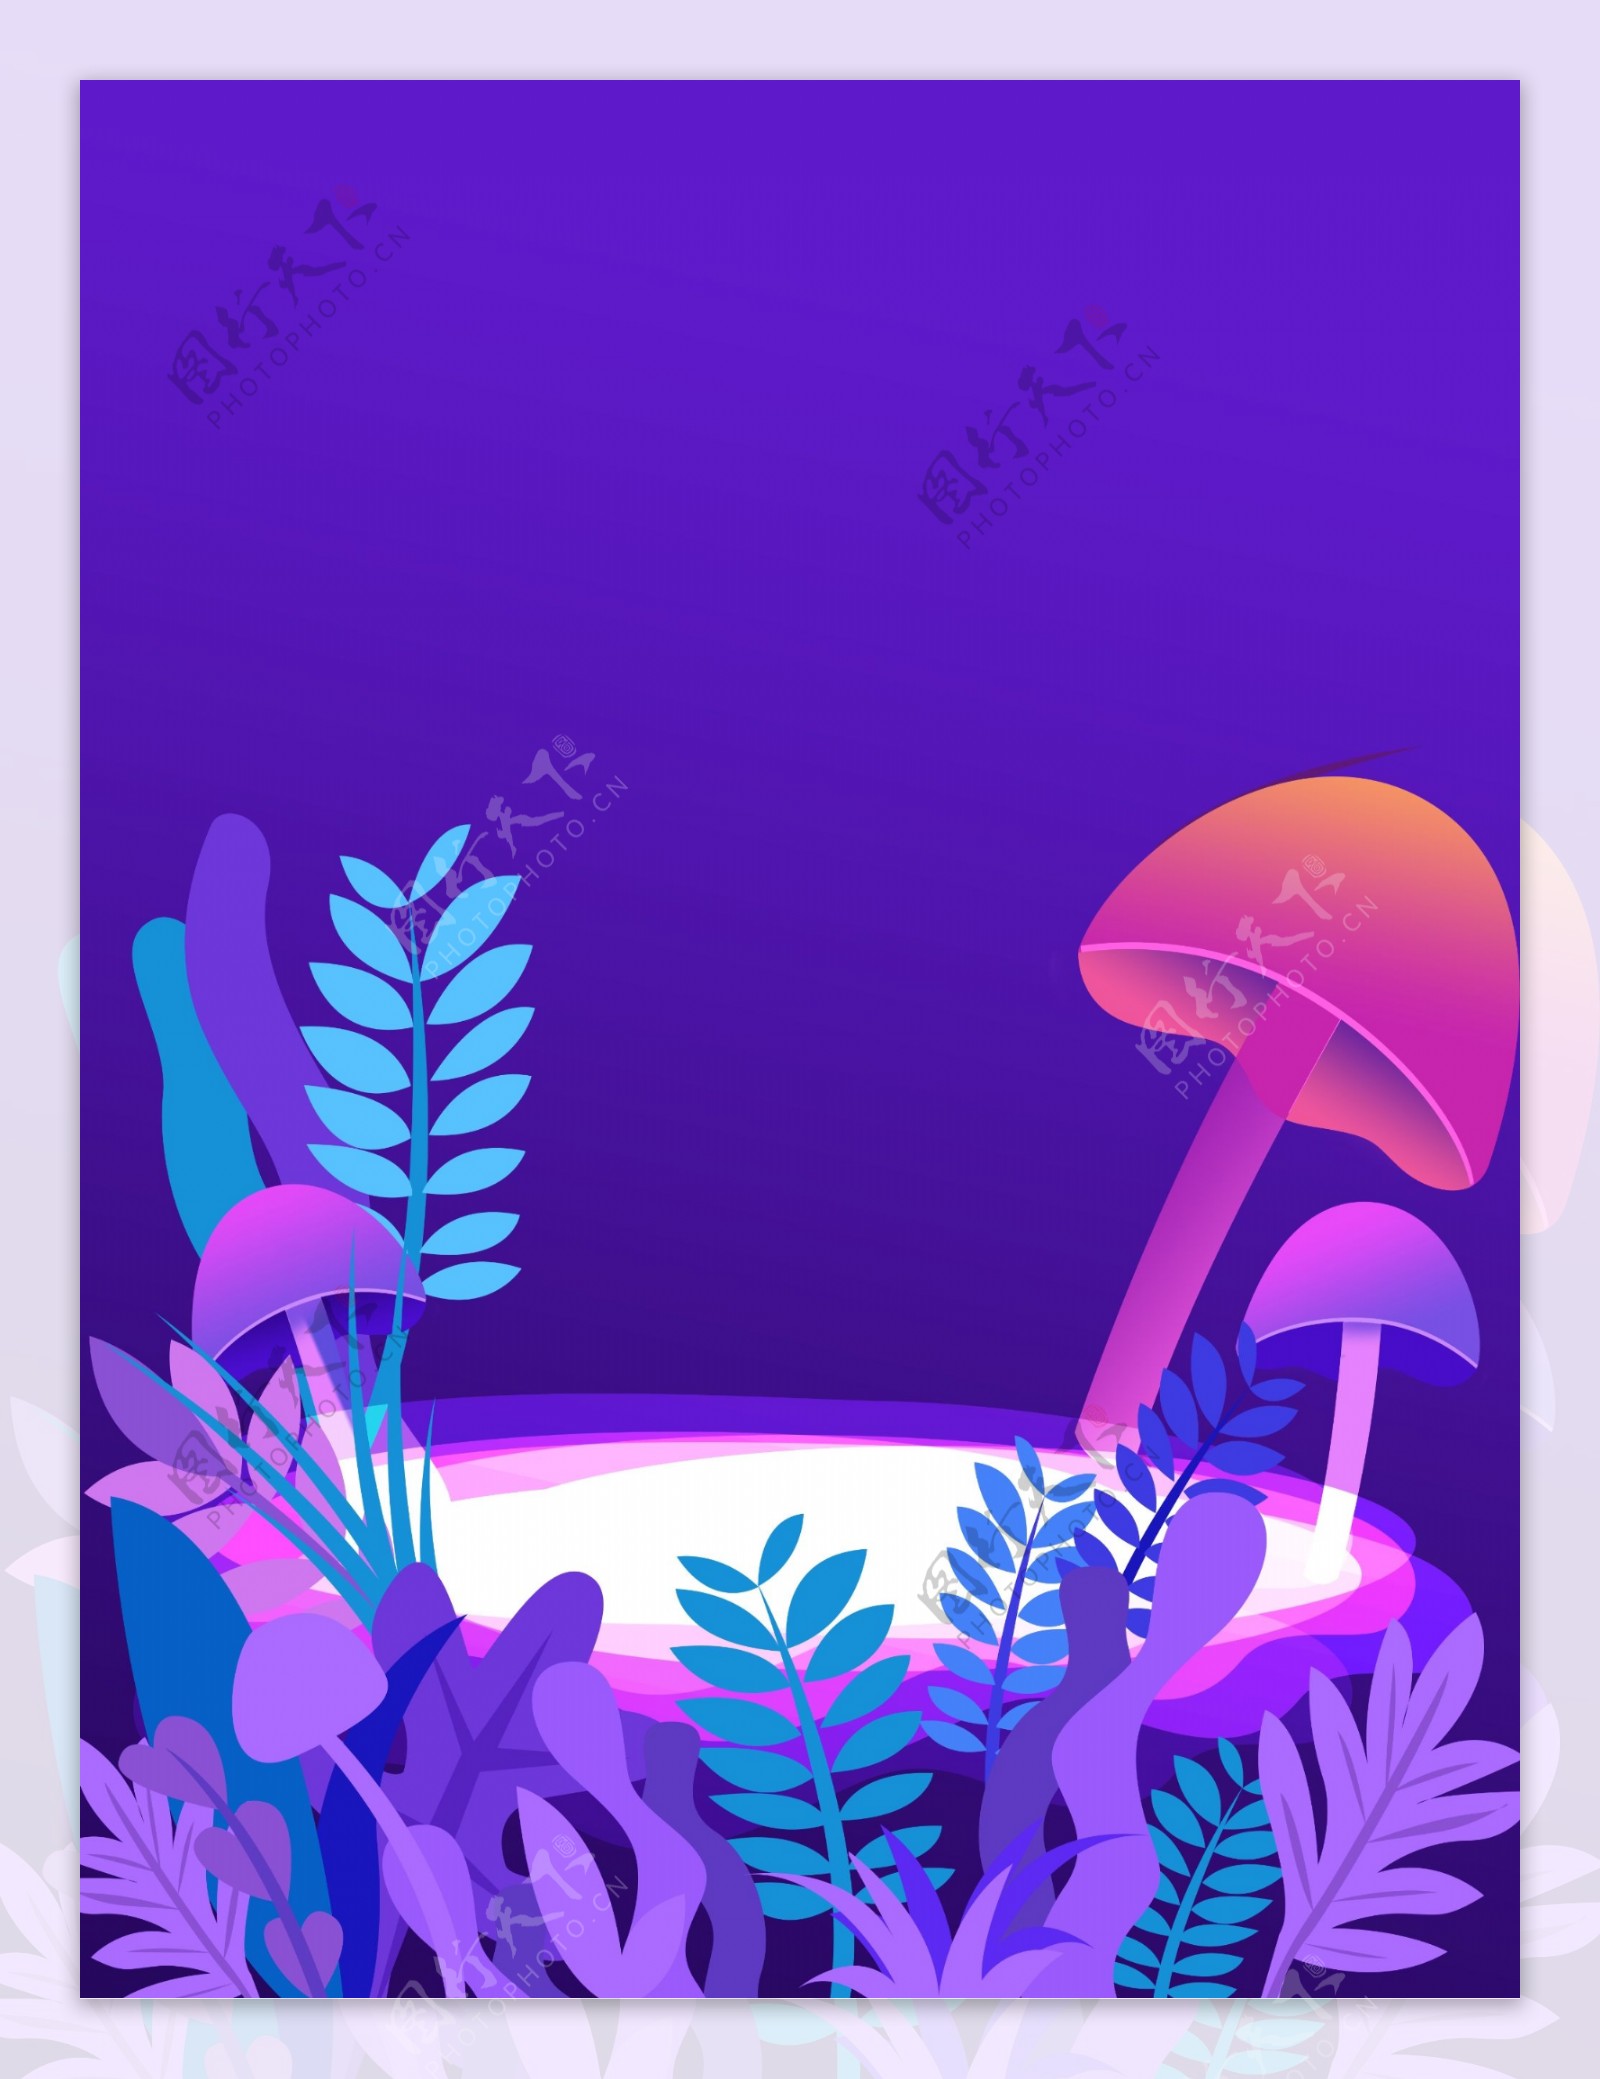 梦境紫色花卉植物插画背景